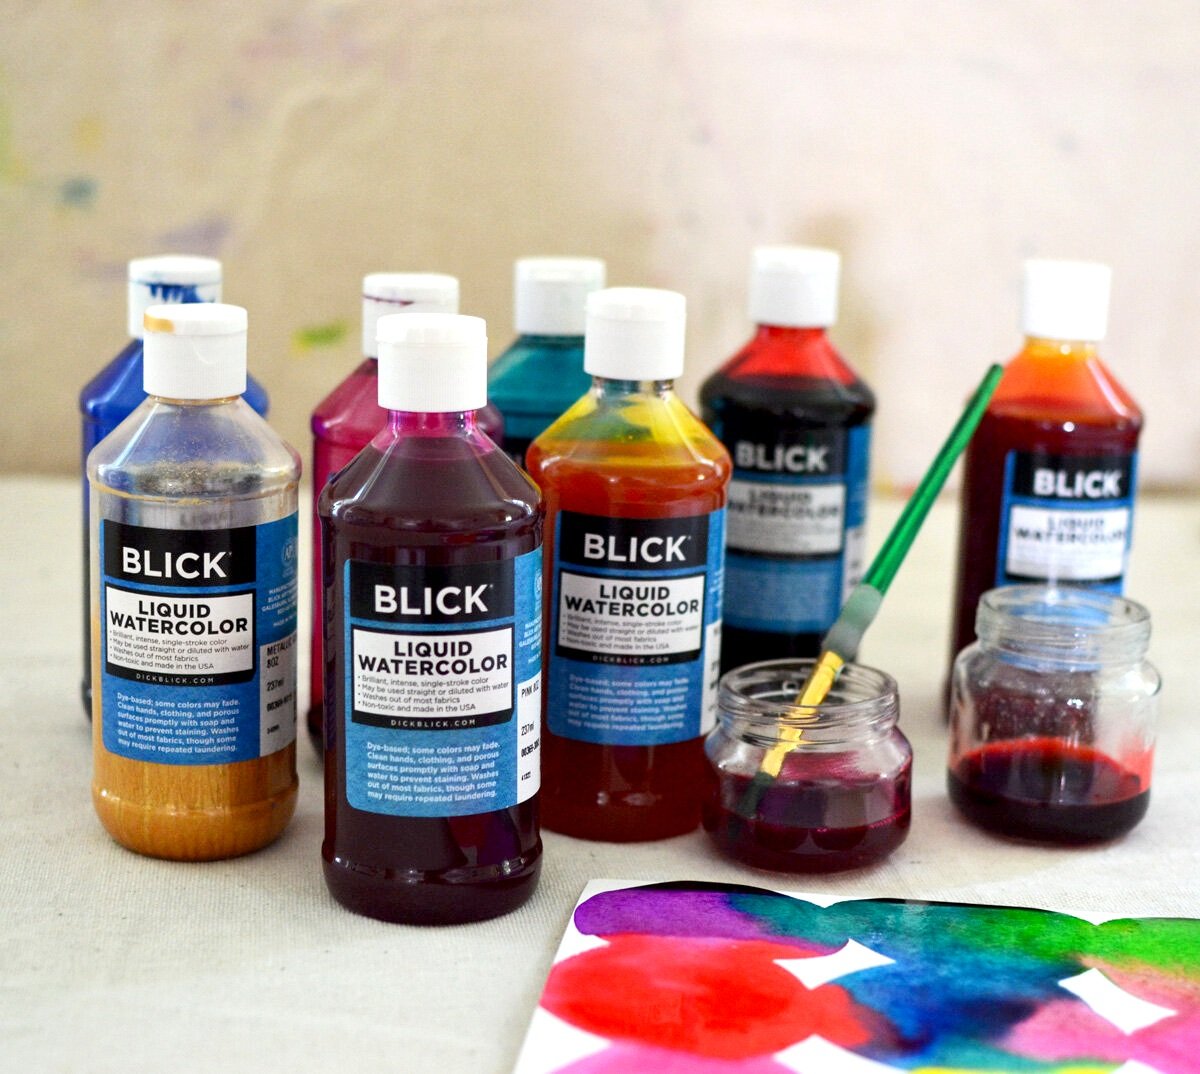 Blick Liquid Watercolor - Blue, 8 oz bottle